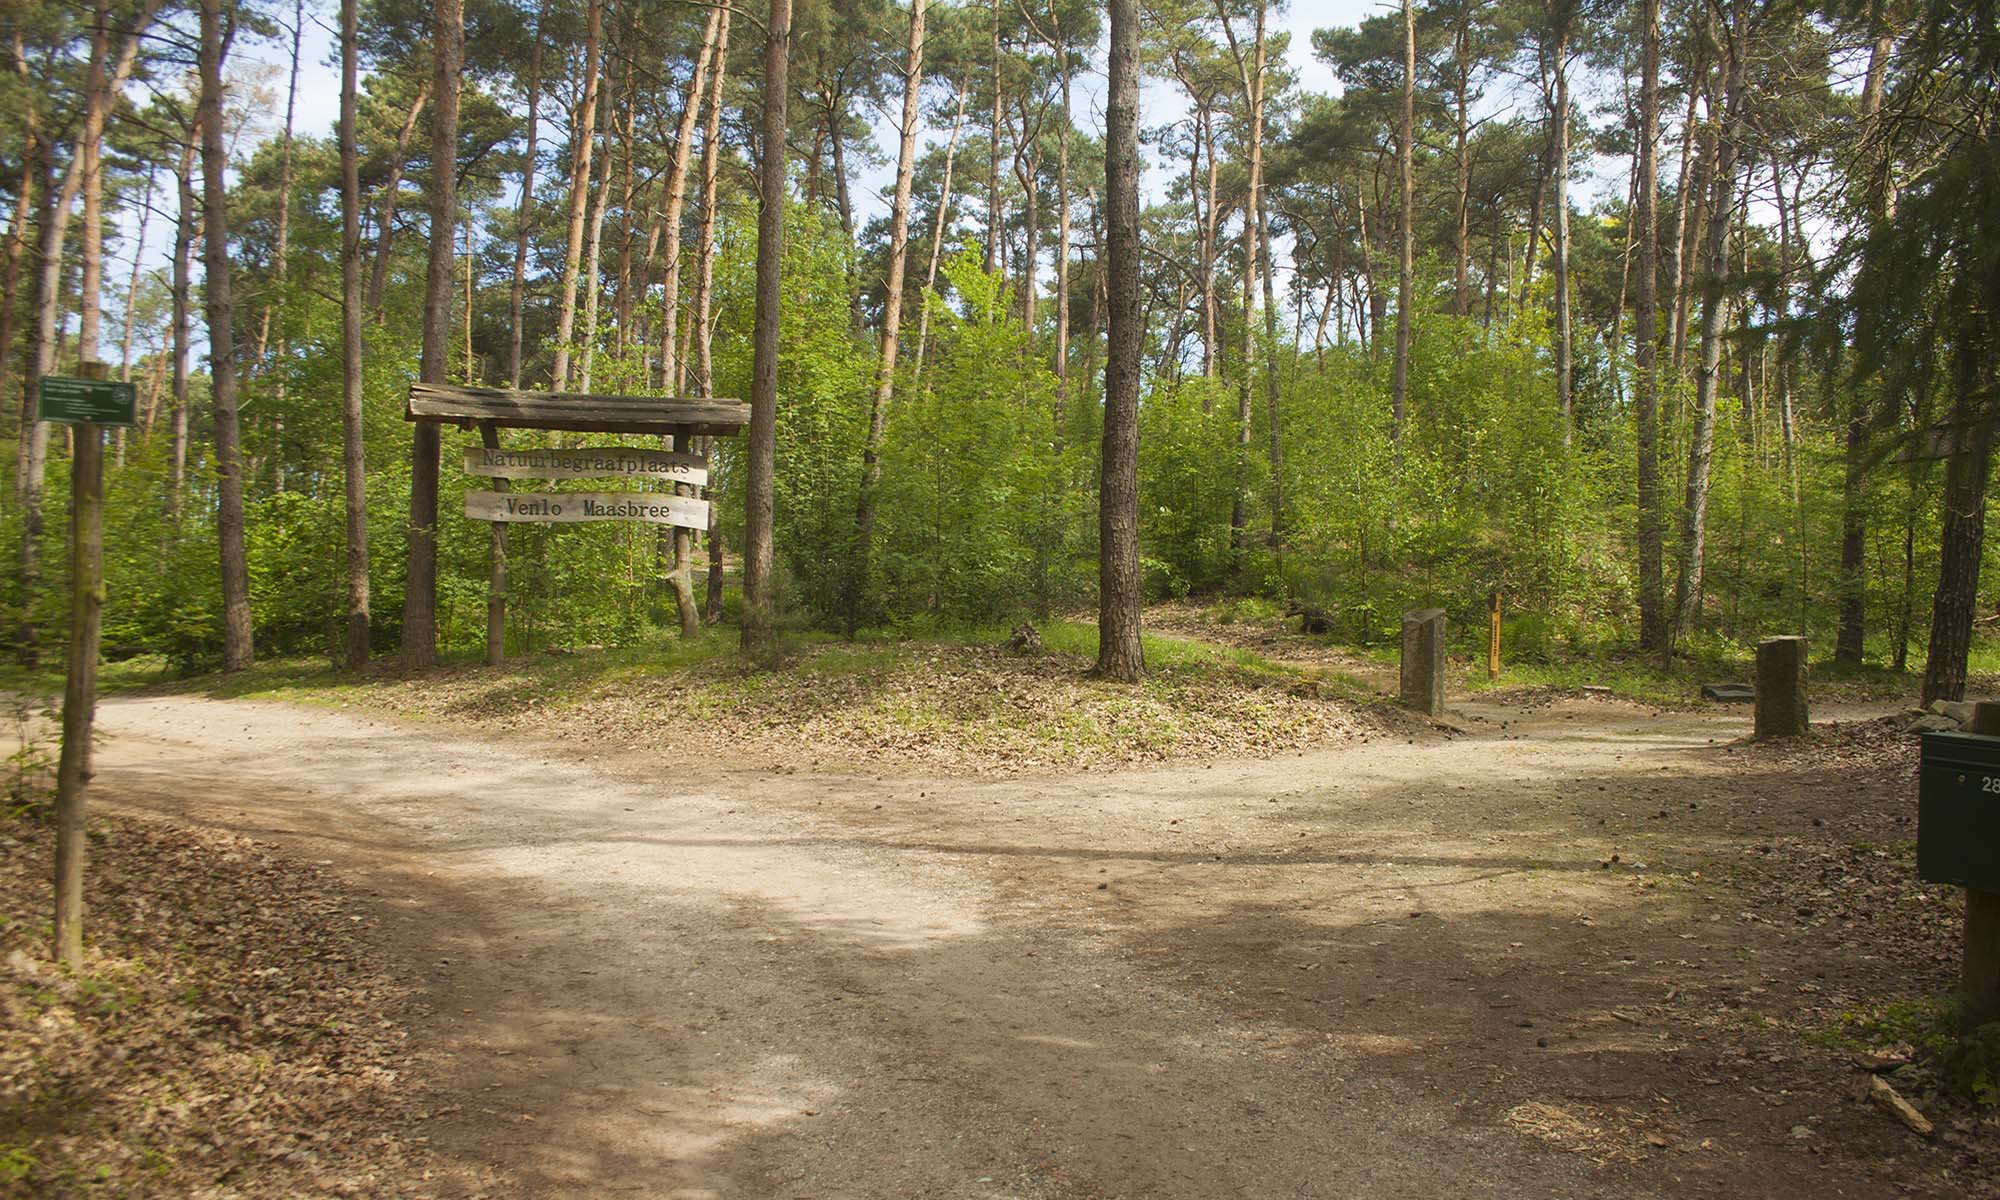 Natuurbegraafplaats Venlo-Blerick